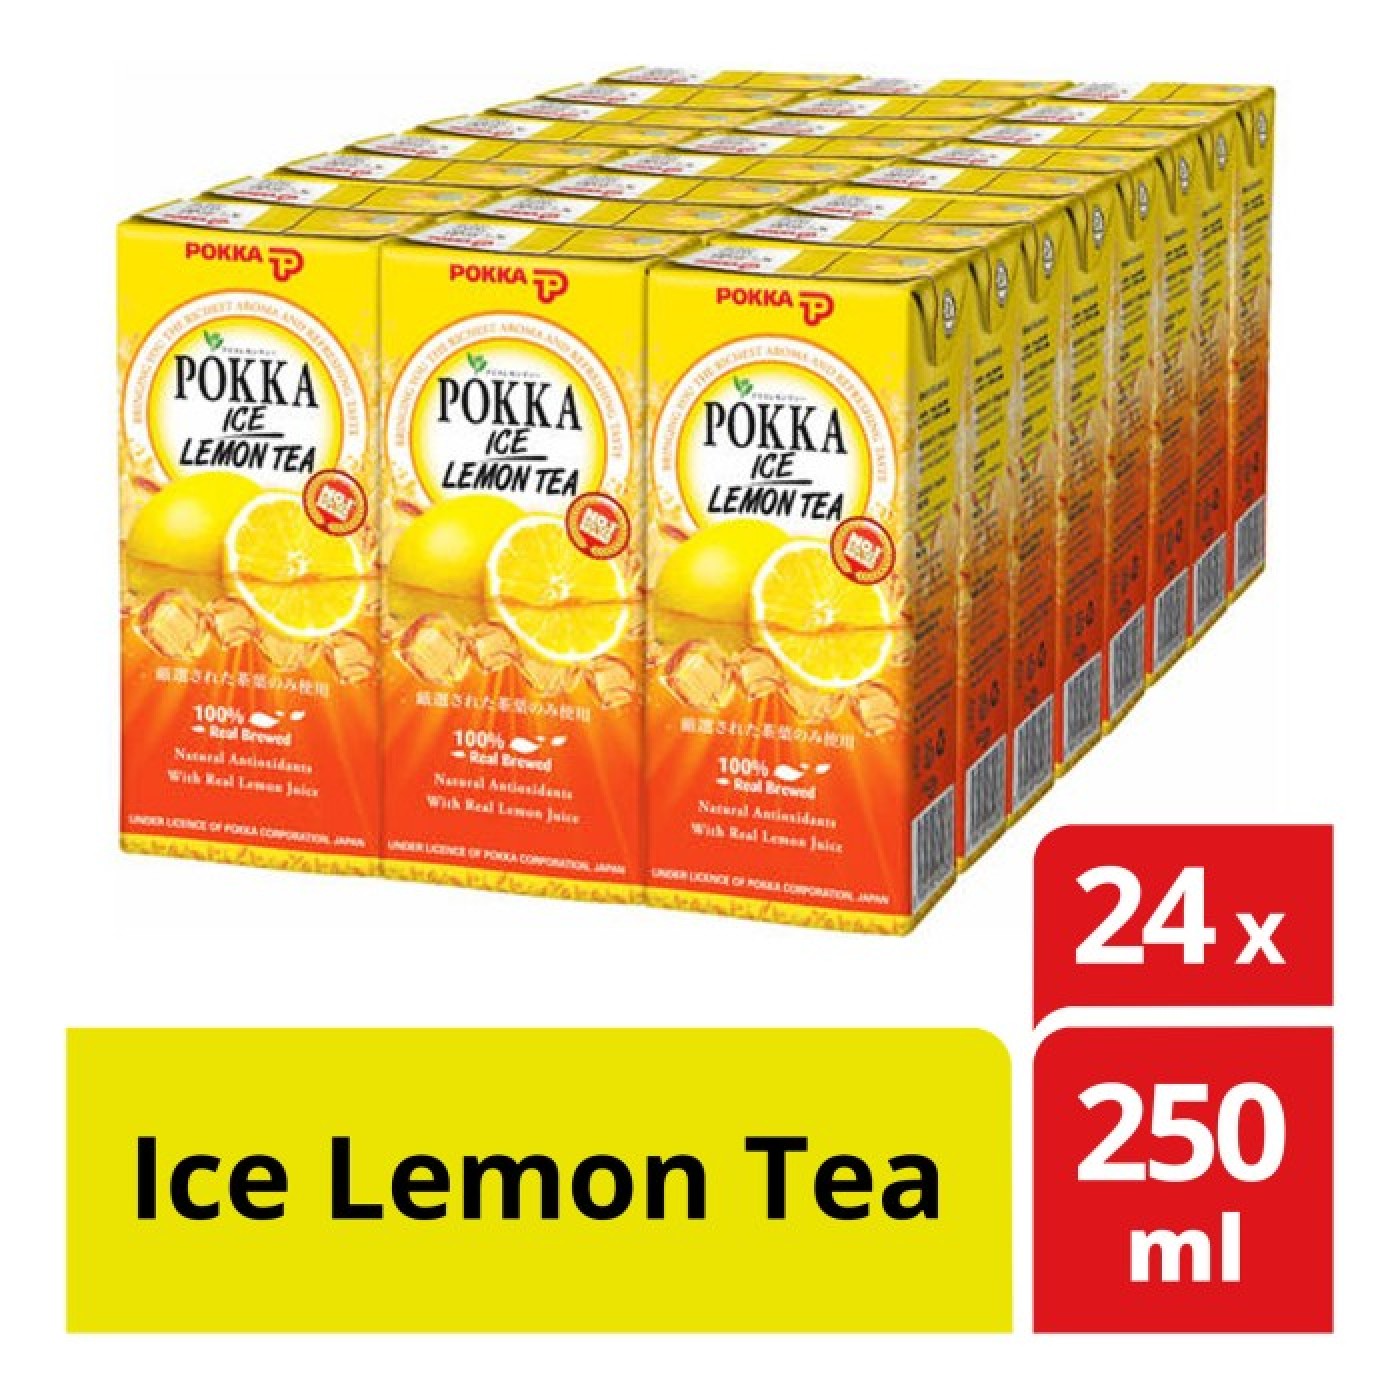 POKKA 250ML ICE LEMON TEA